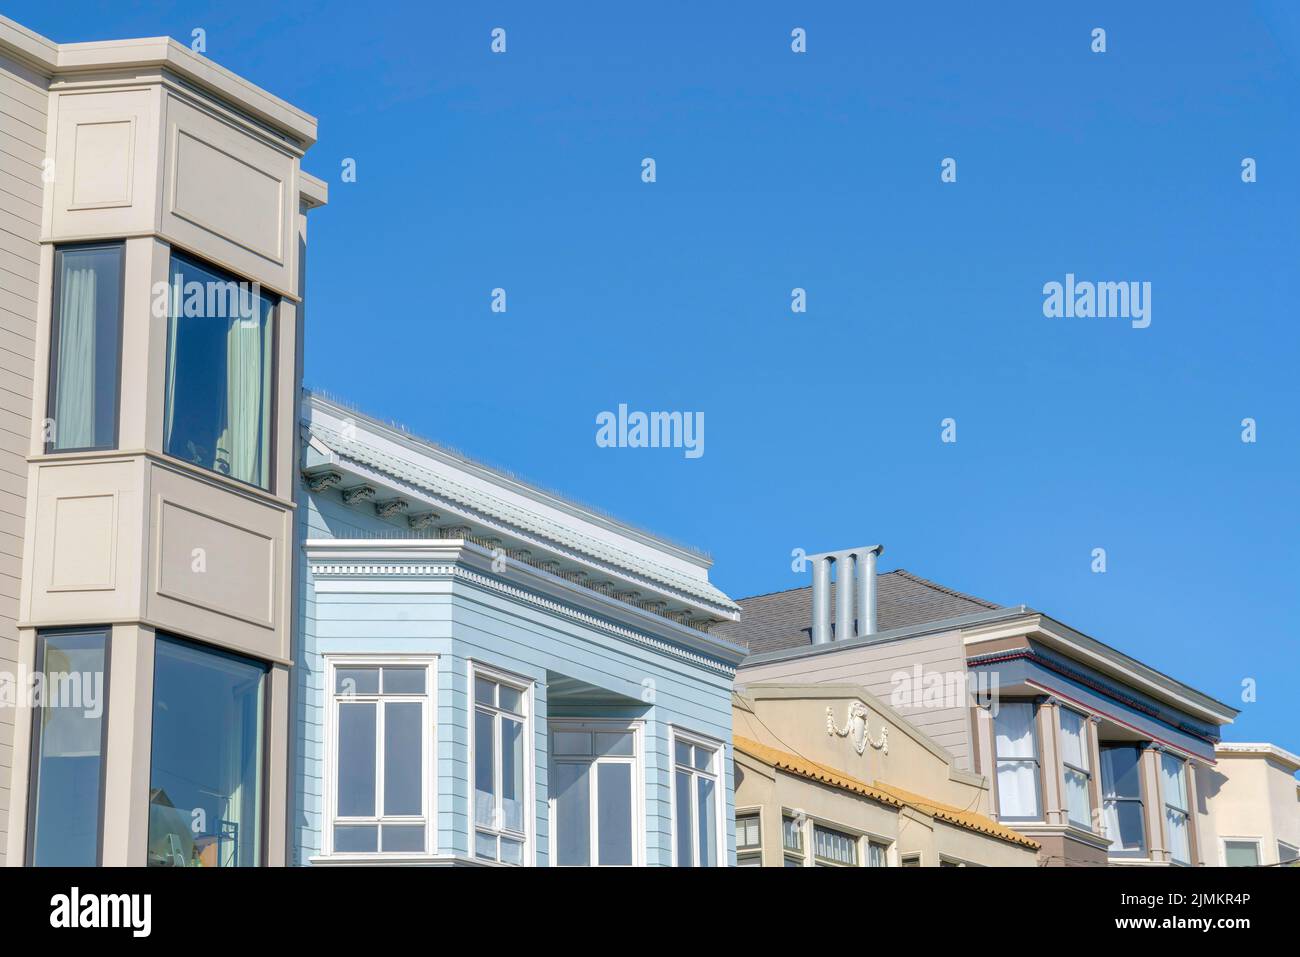 Bâtiments résidentiels dans une vue de bas angle avec différents designs et extérieur à San Francisco, CA. Vue de la partie supérieure du quartier contre le clair Banque D'Images